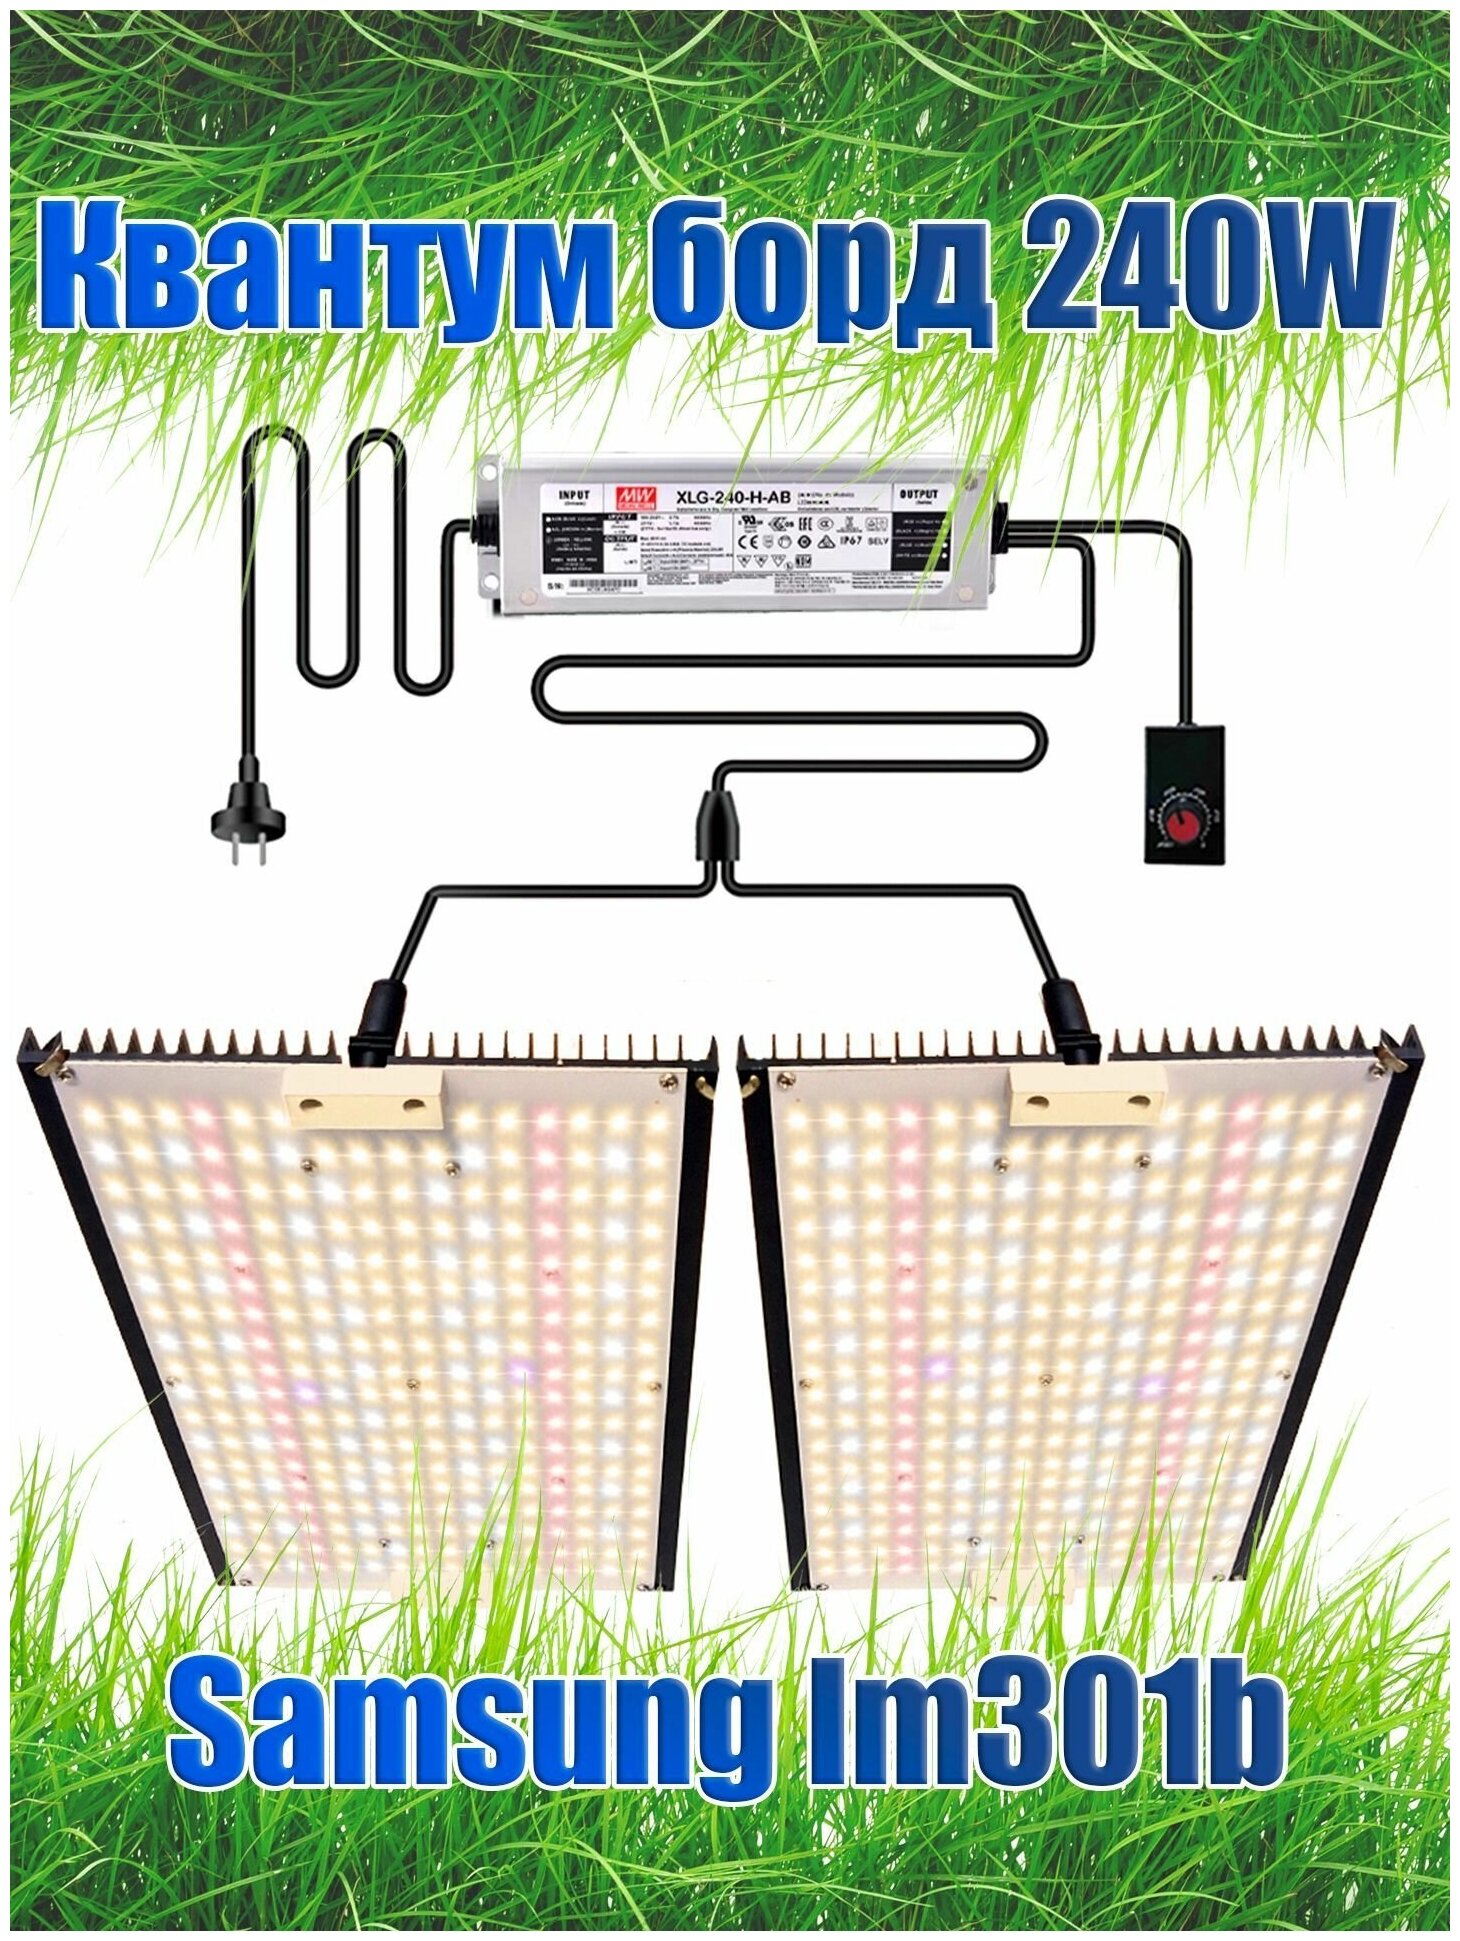 Светильник для растений/ Quantum board/ Квантум борд/ 240 ватт/ Samsung LM301b/ Полный спектр/ Лампа для растений/ 450-650нм